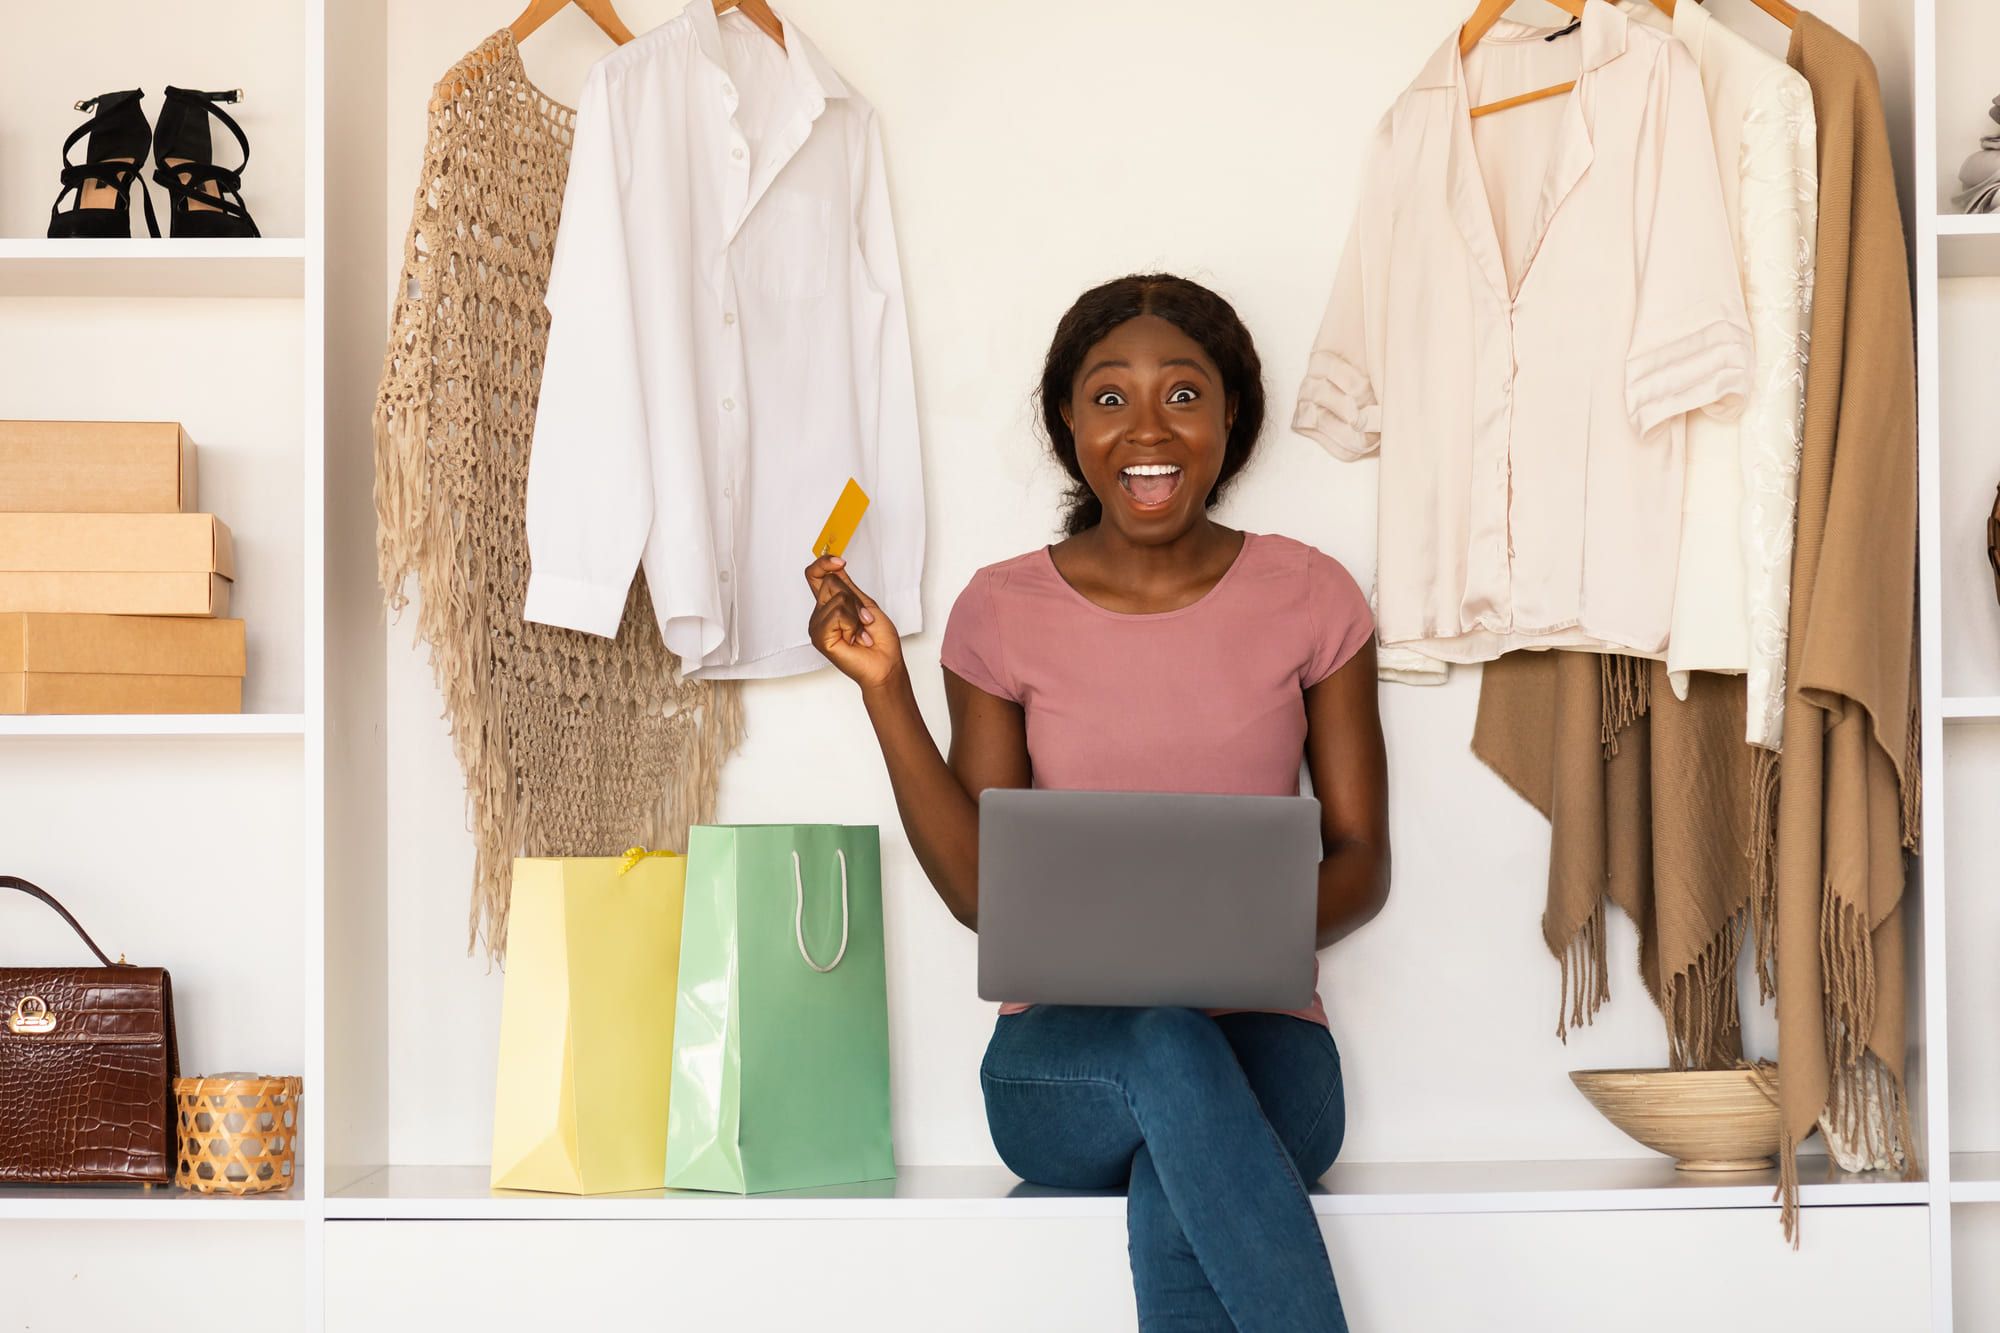 パソコンを見ながらクレジットカードを手に取り喜ぶピンクのシャツを着た女性